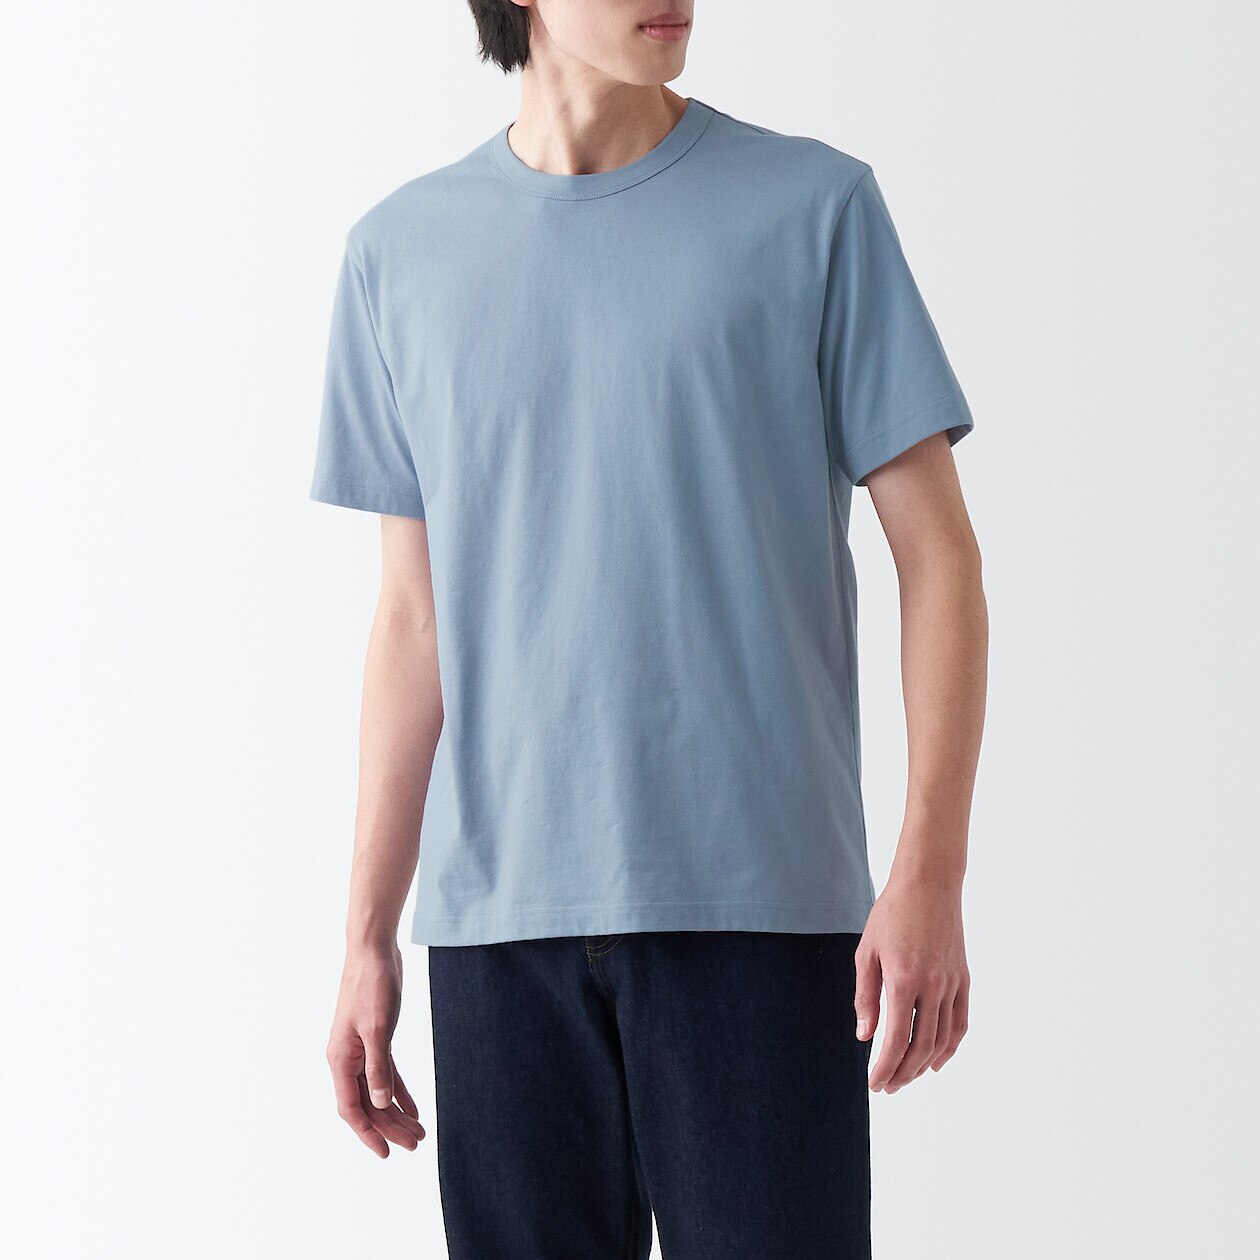 Men's Cotton Blend Crew Neck T-shirt